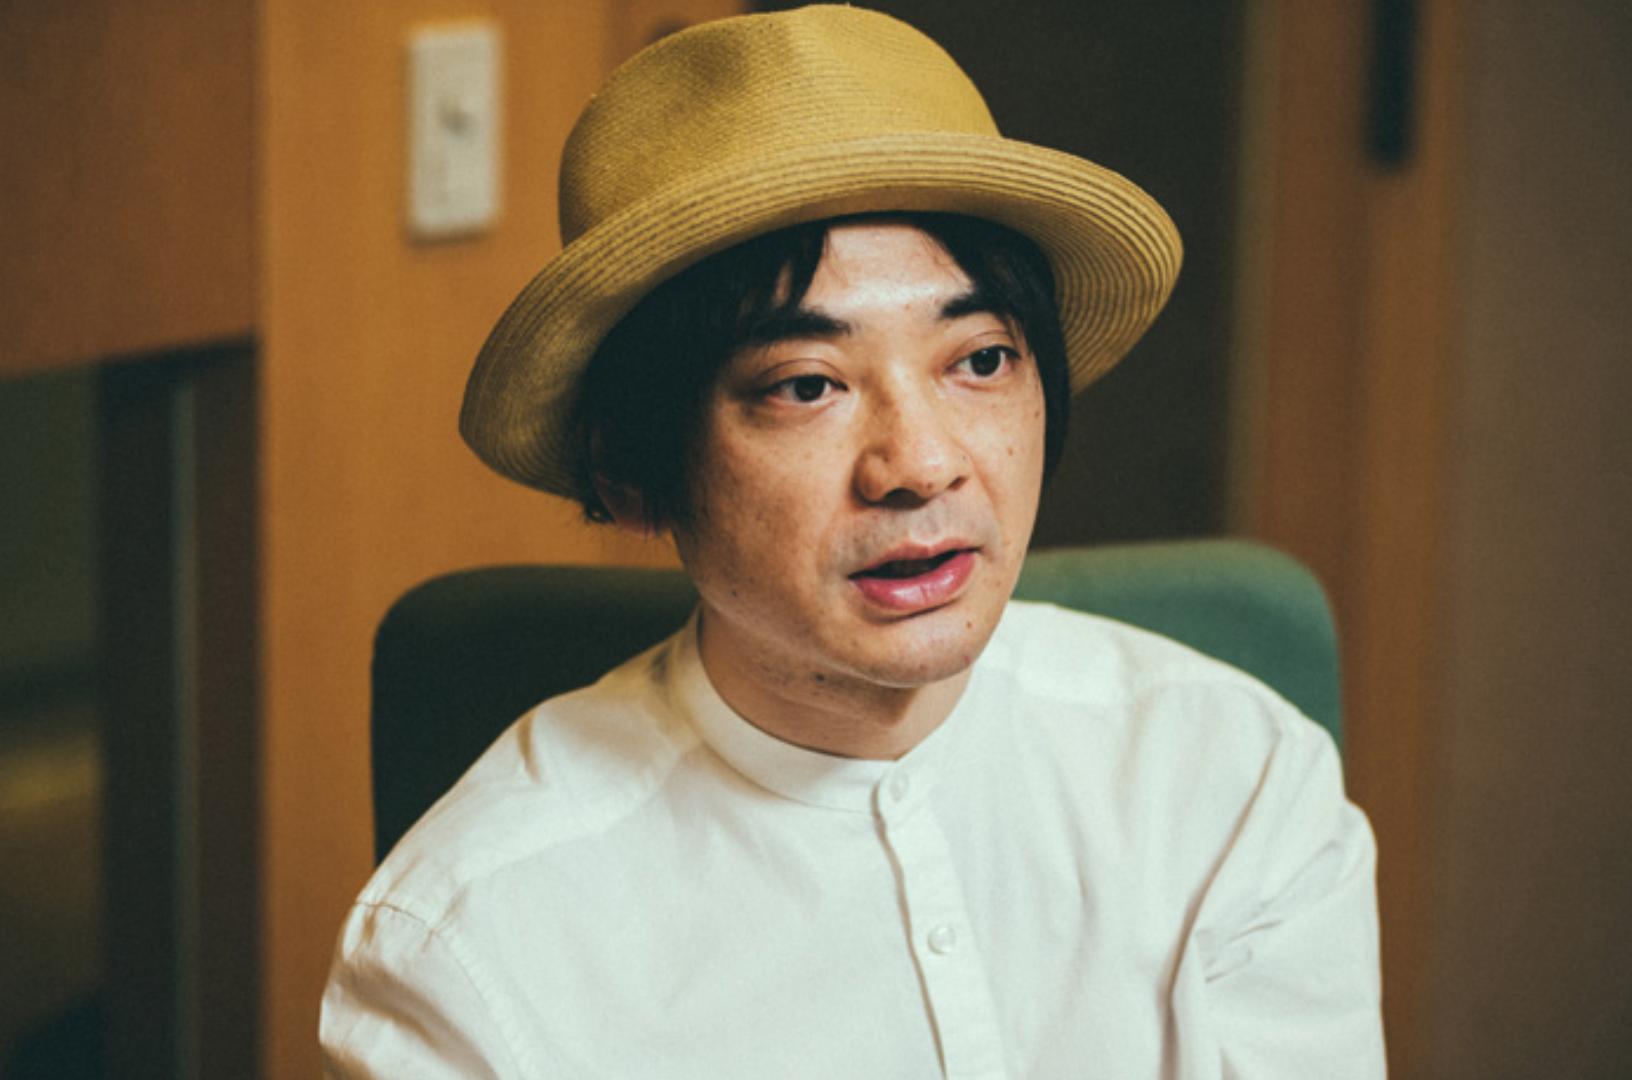 東京五輪開閉会式の制作メンバー「小山田圭吾」が、自身の障害者いじめを武勇伝として語っていたことが発覚し、国民の五輪離れがさらに深刻化